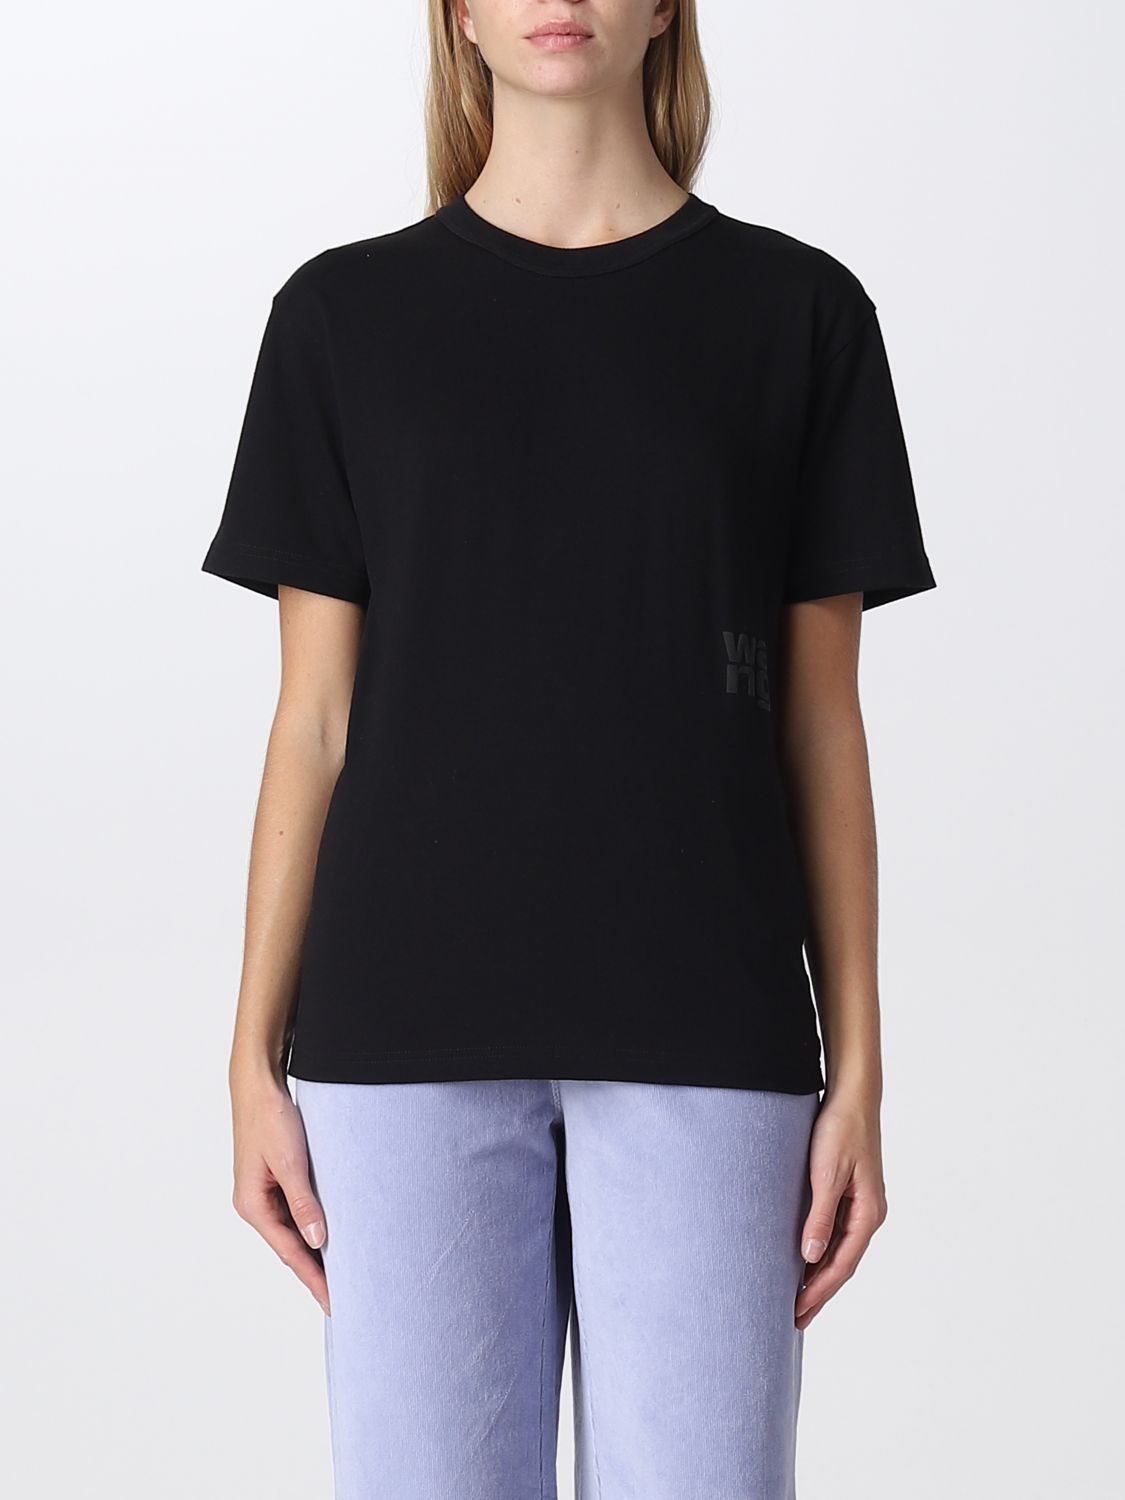 Alexander Wang T-shirts  Women In Black